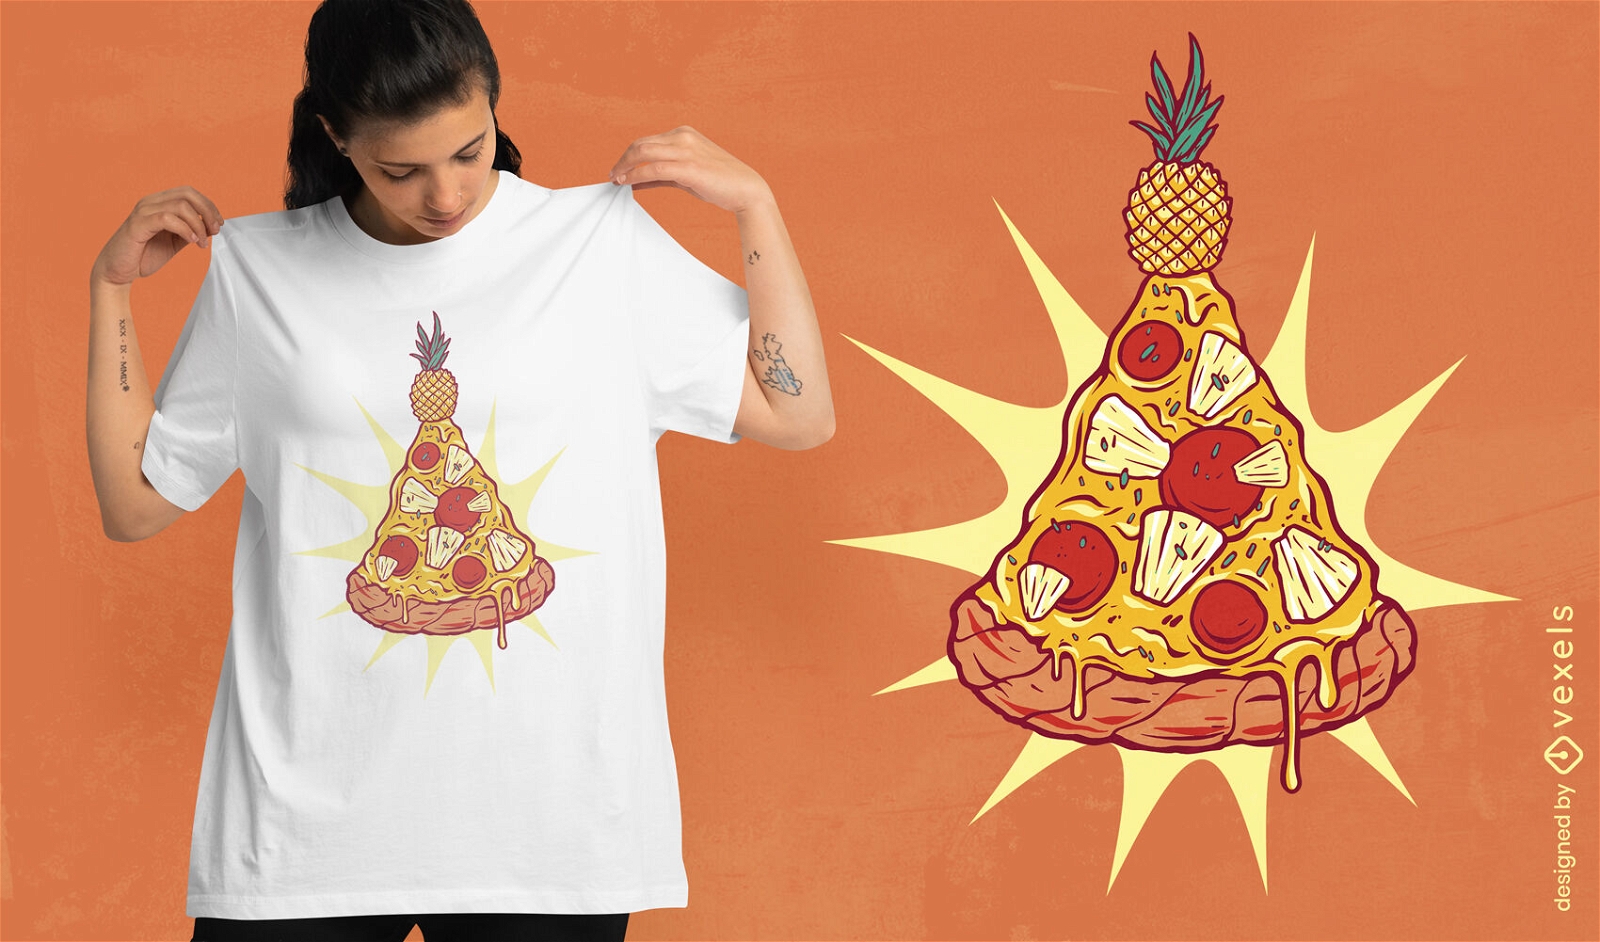 Dise?o de camiseta navide?a de pizza de pi?a.